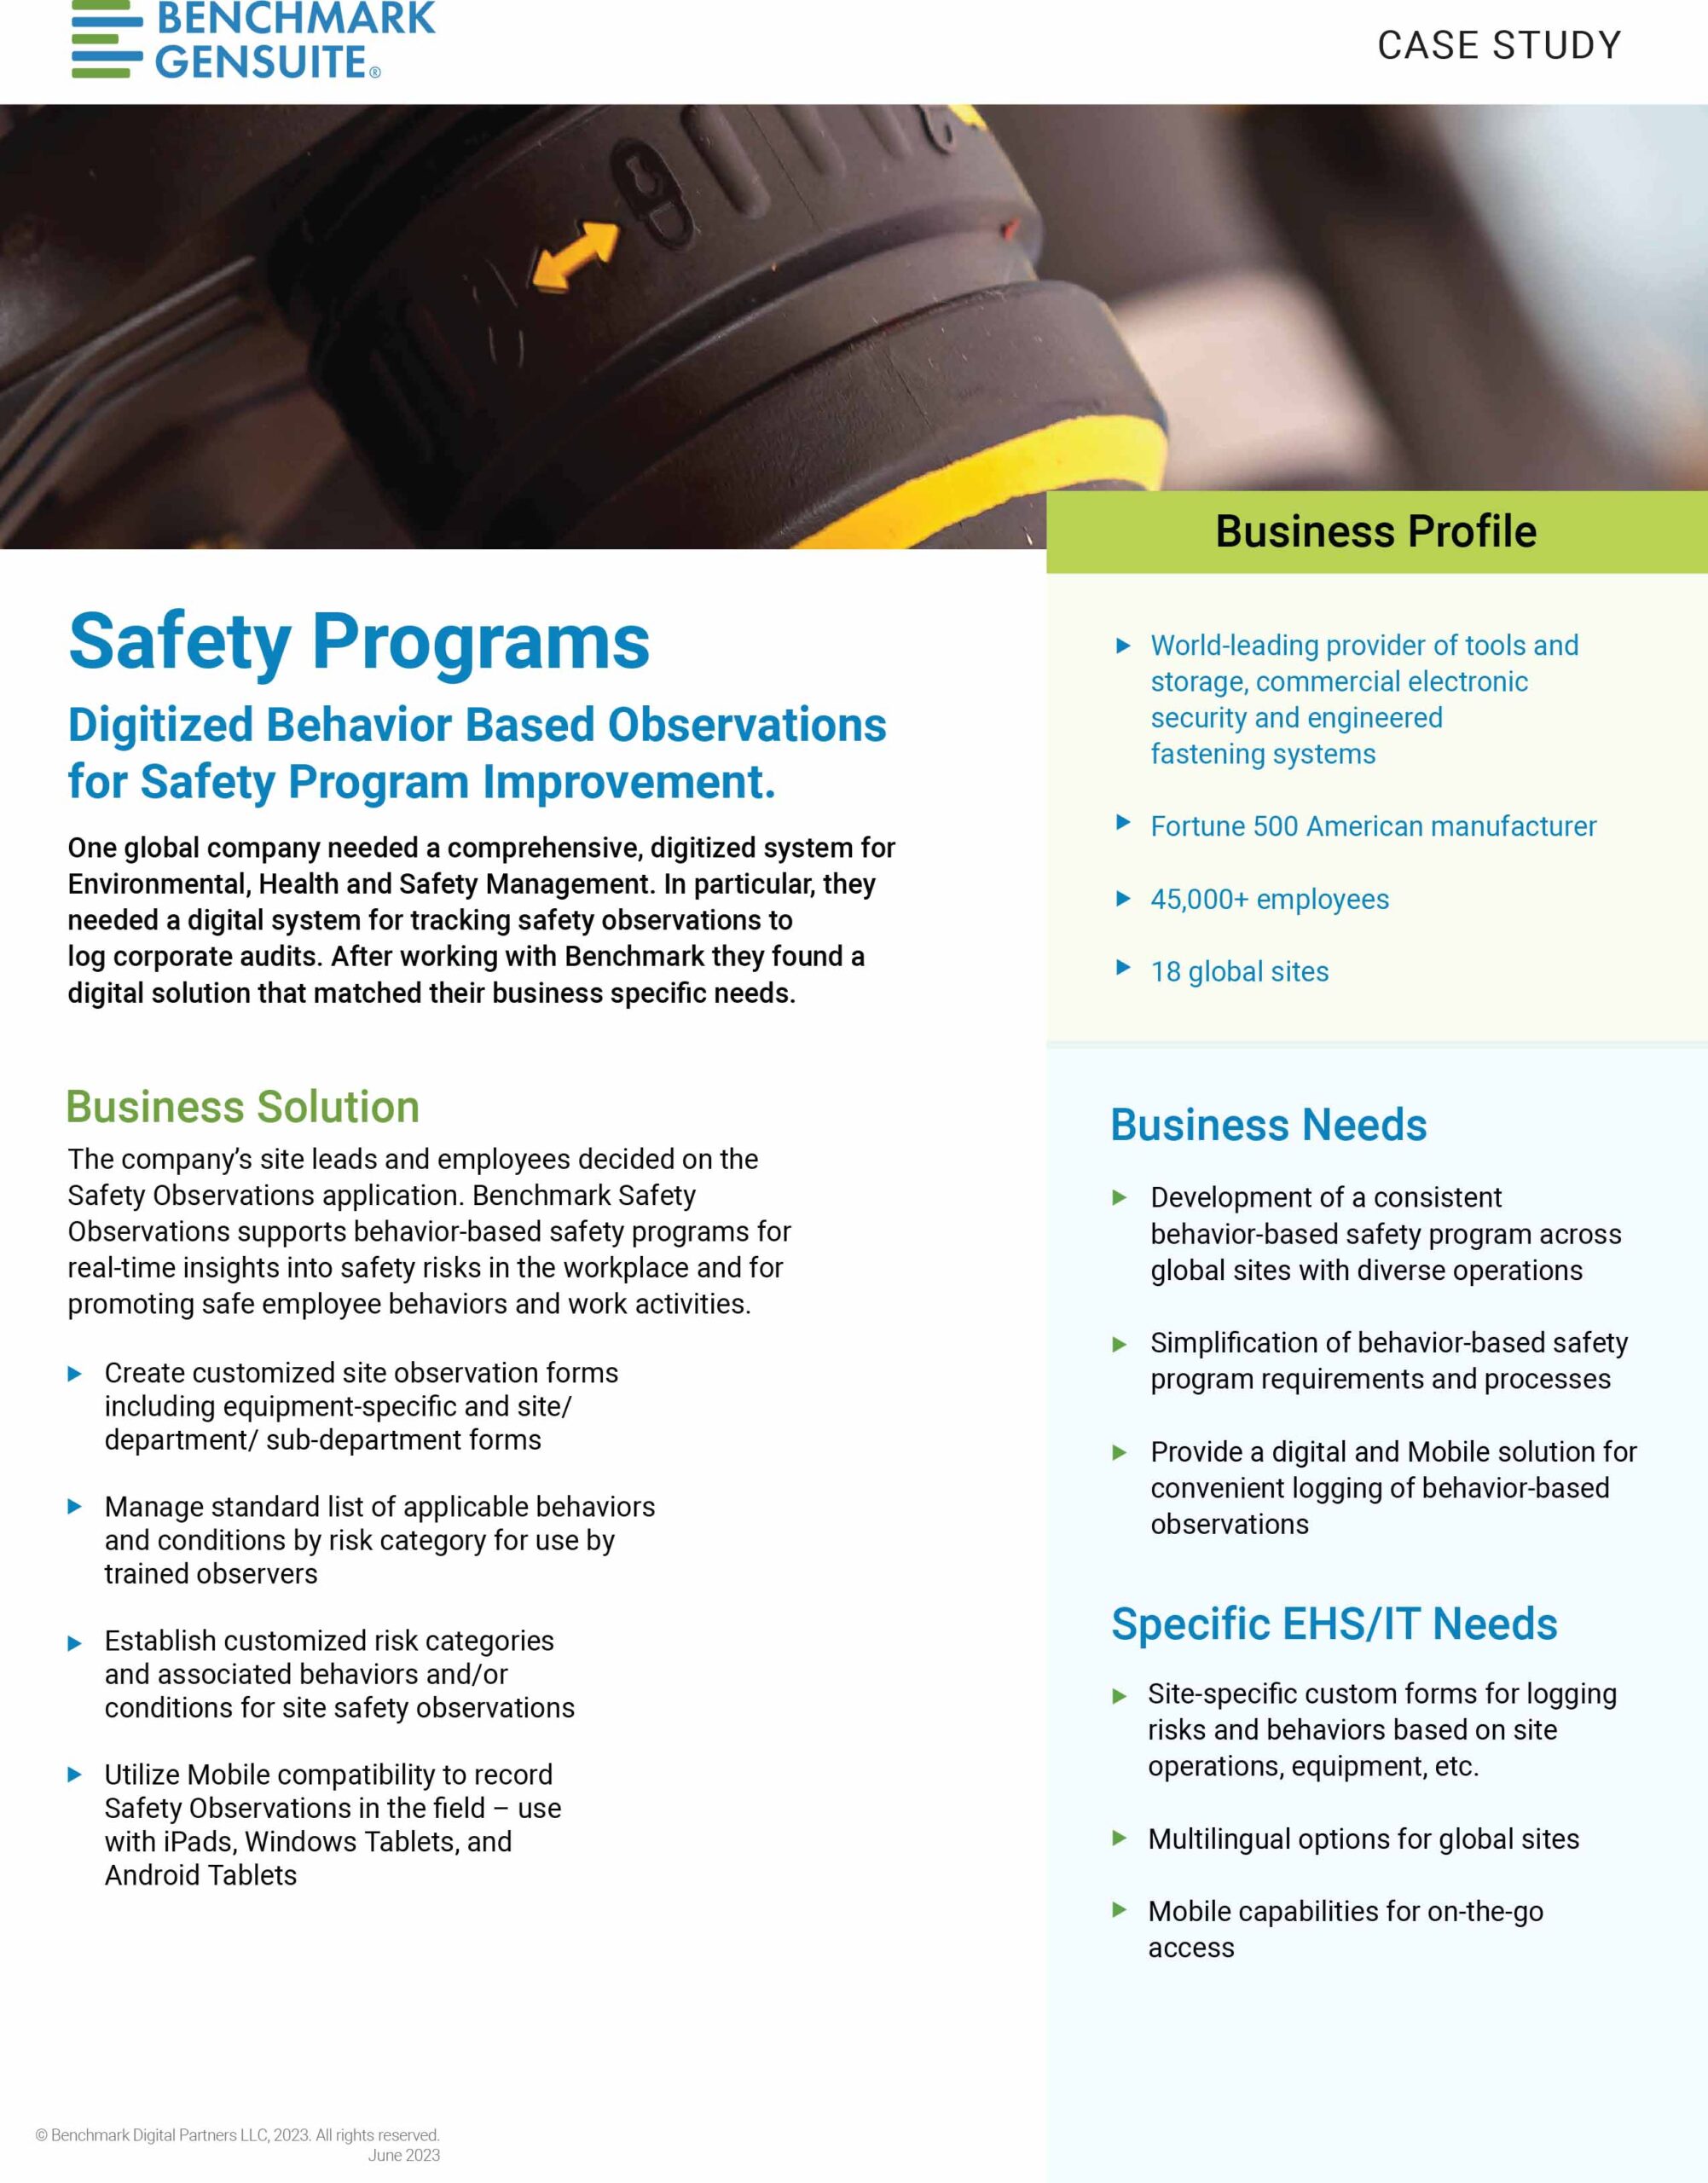 Safety Programs Behavior Based Observations